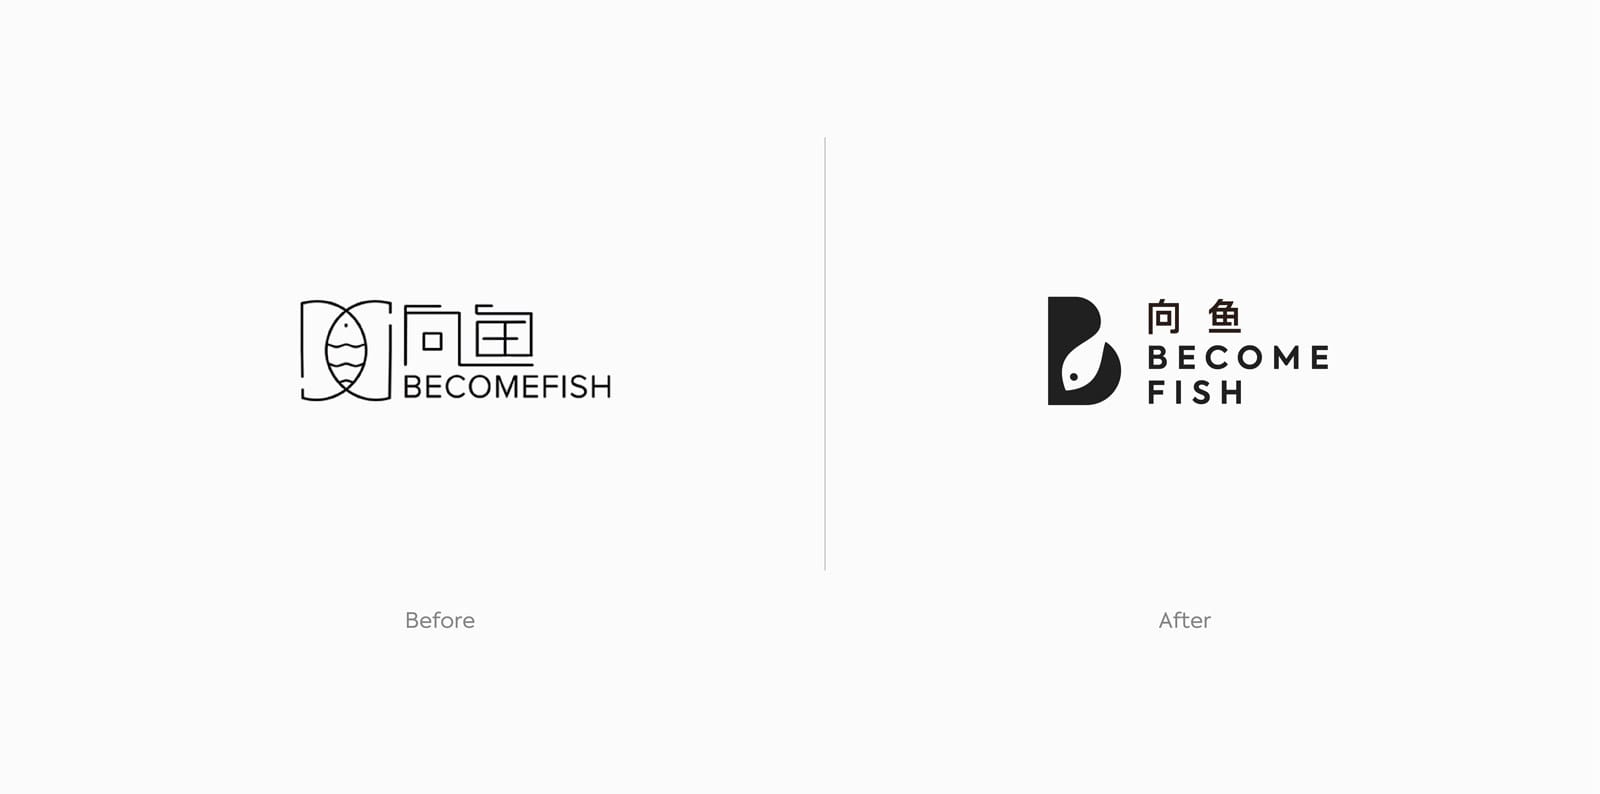 向鱼新旧logo对比